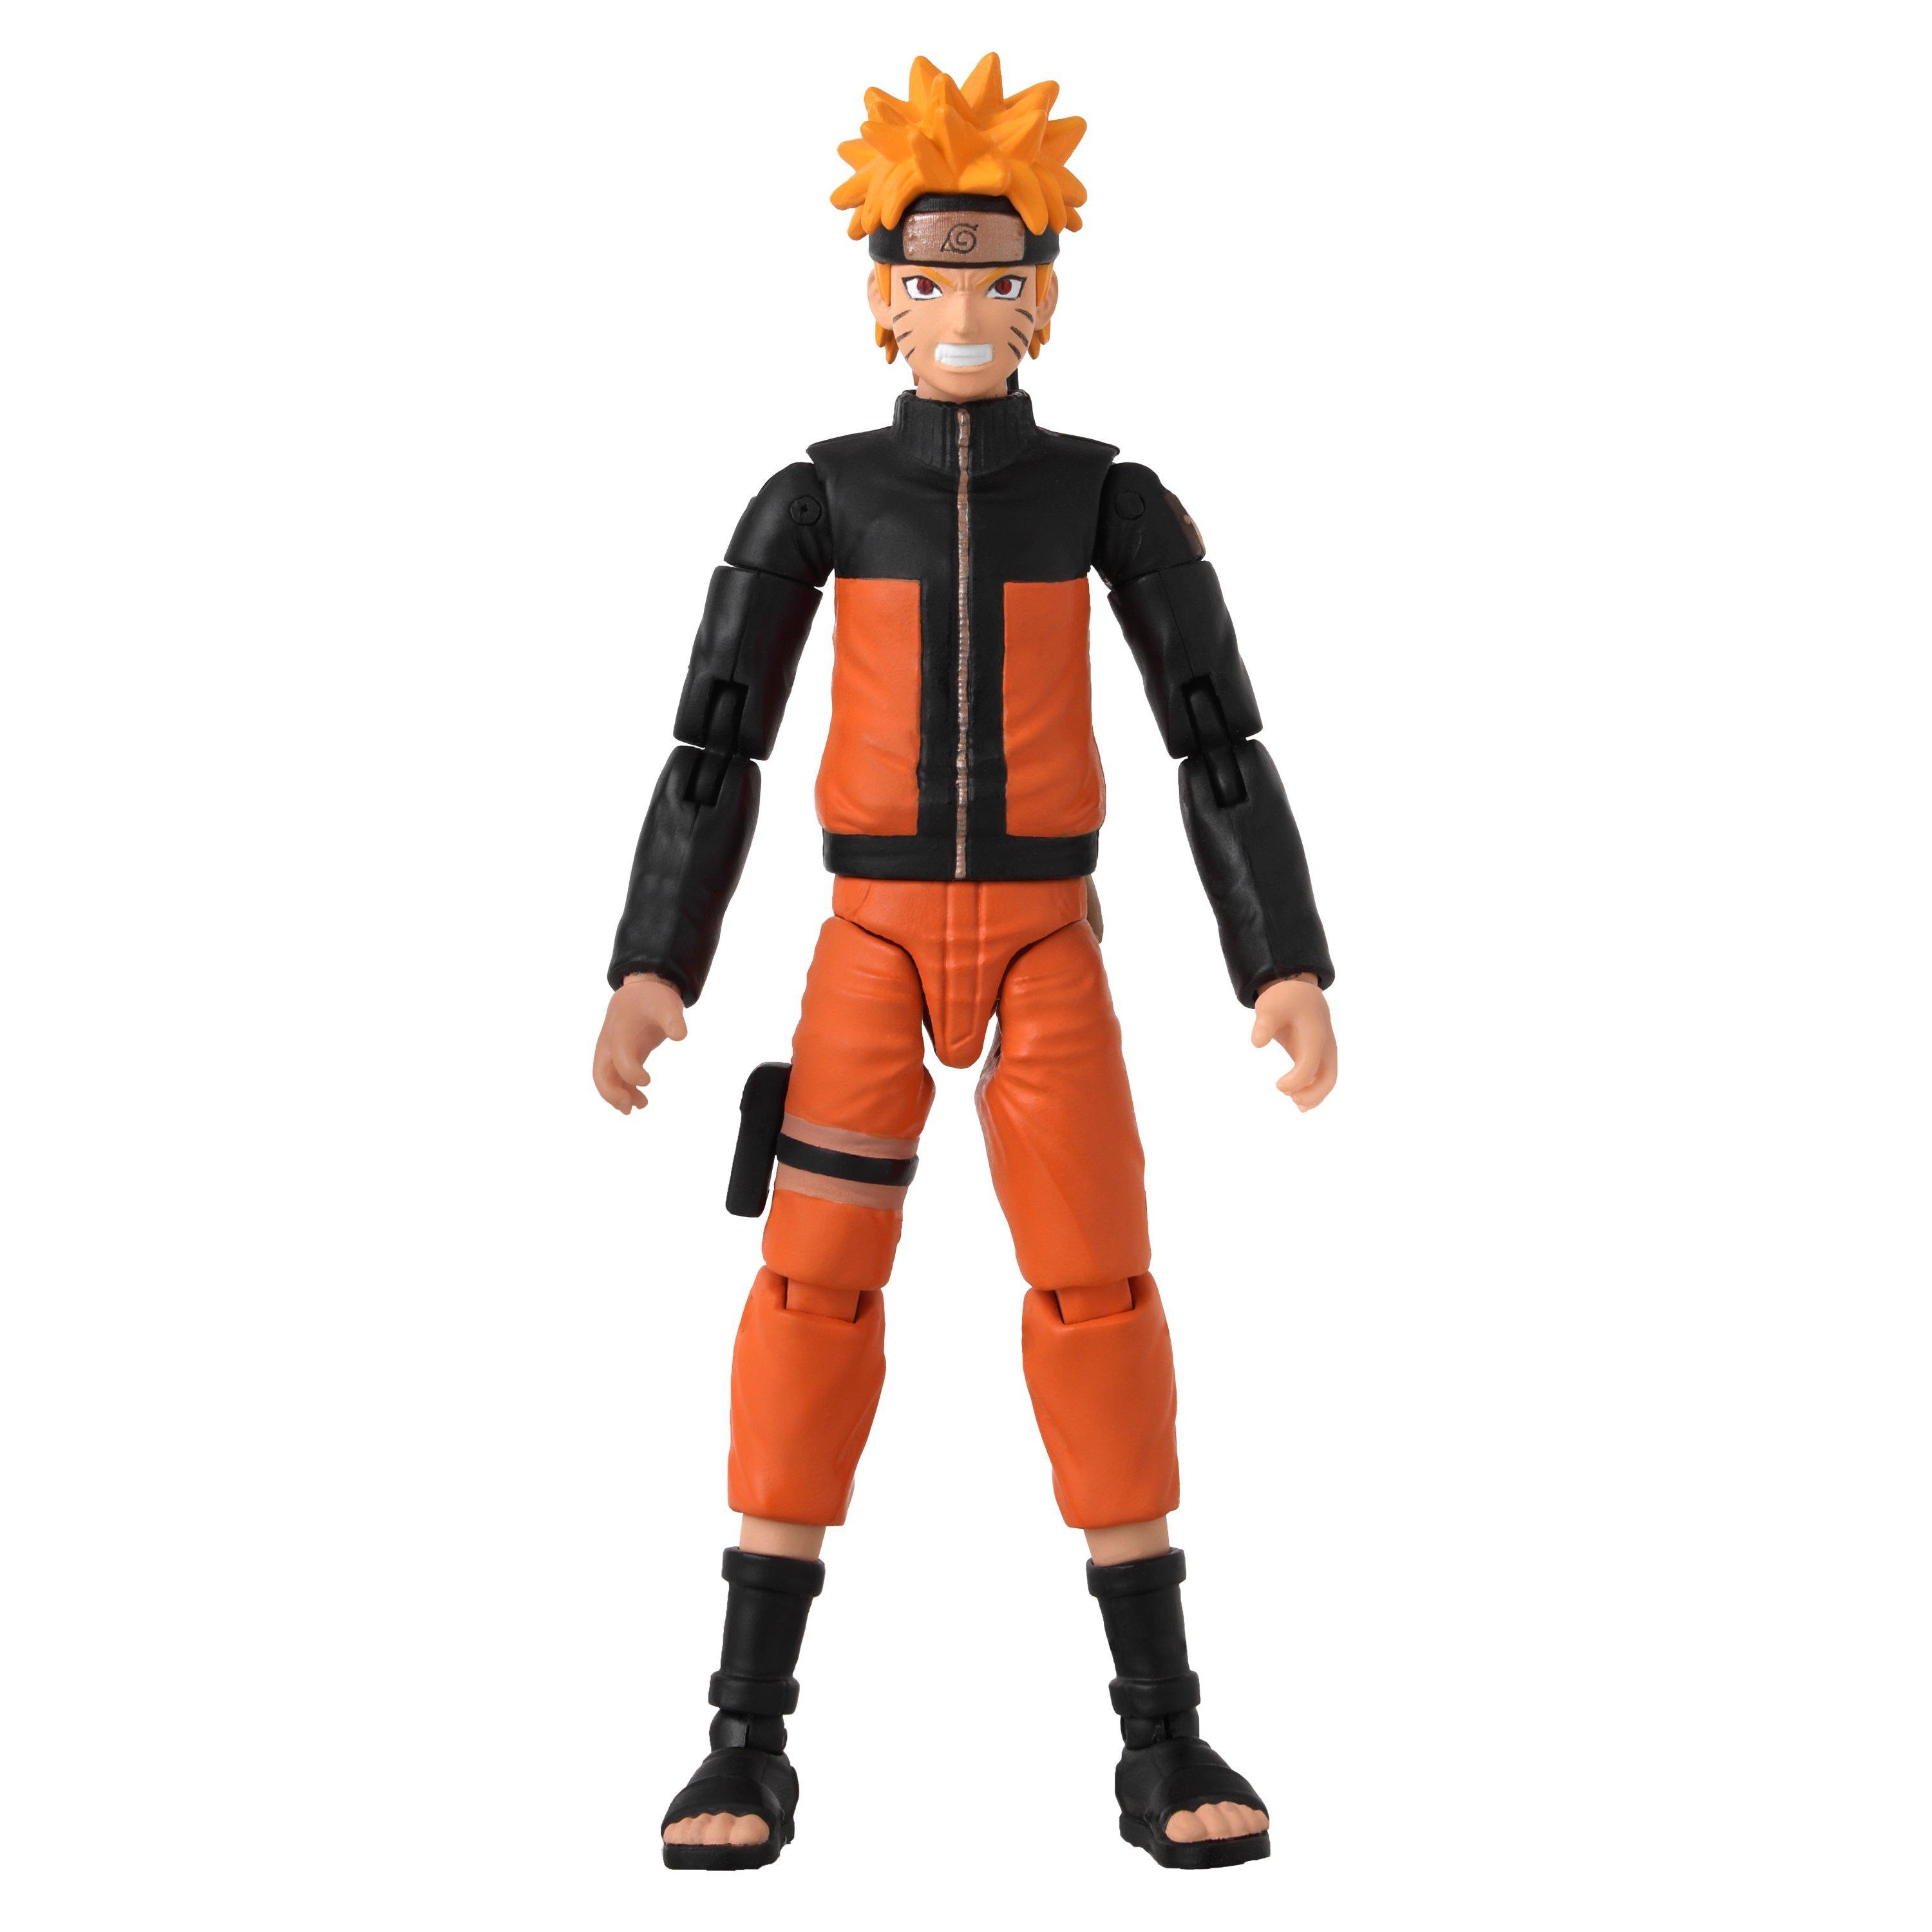 Bandai Anime Heroes Naruto 6.5 Action Figure Uzumaki  - Best Buy